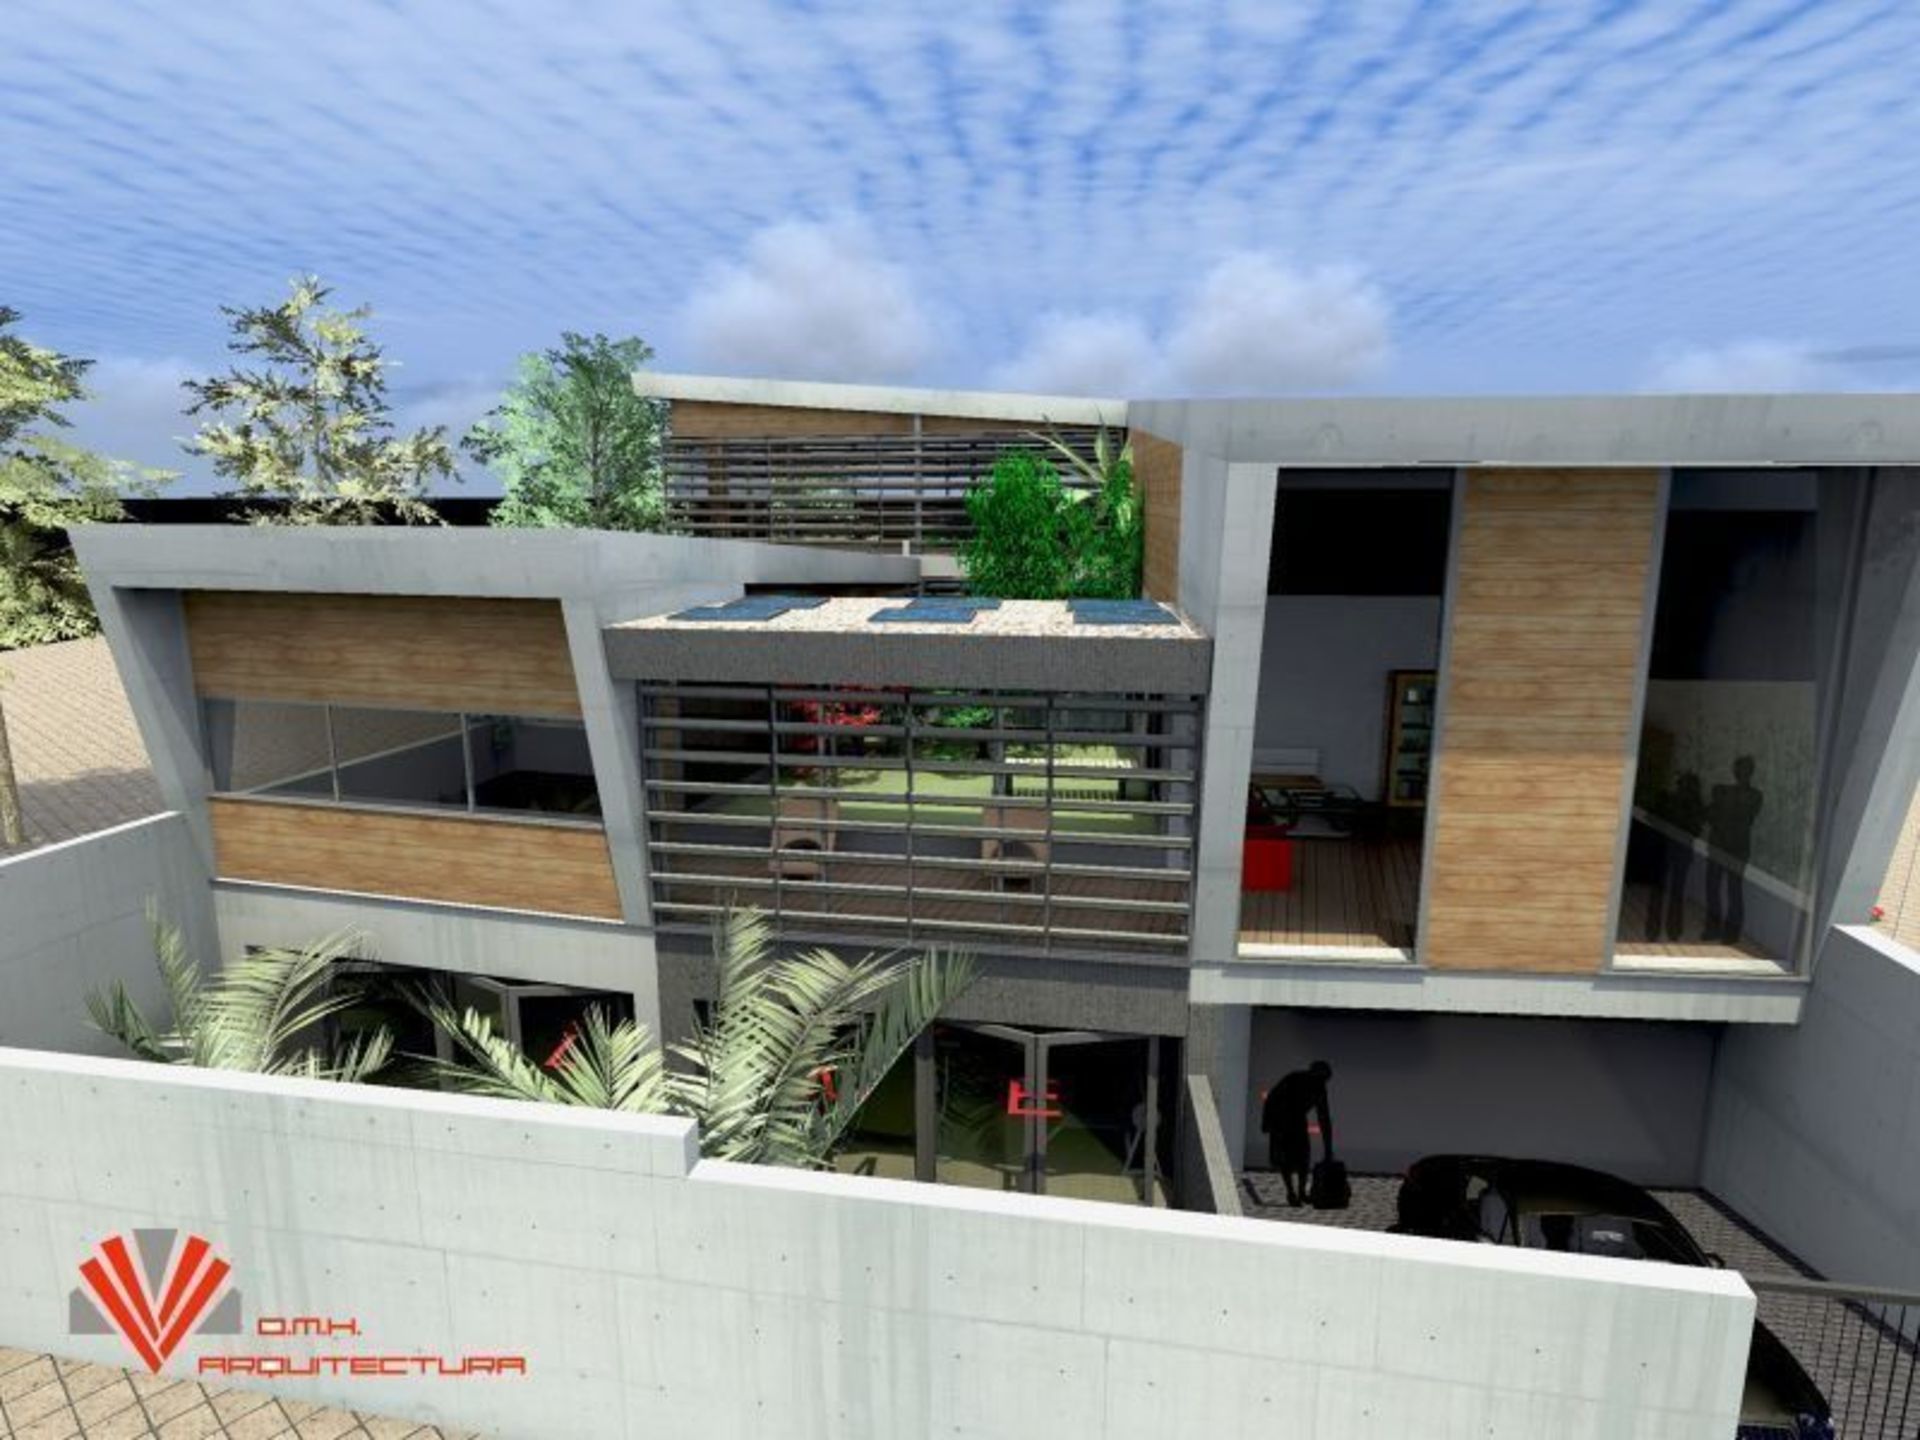 Proyecto de vivienda para arquitecto